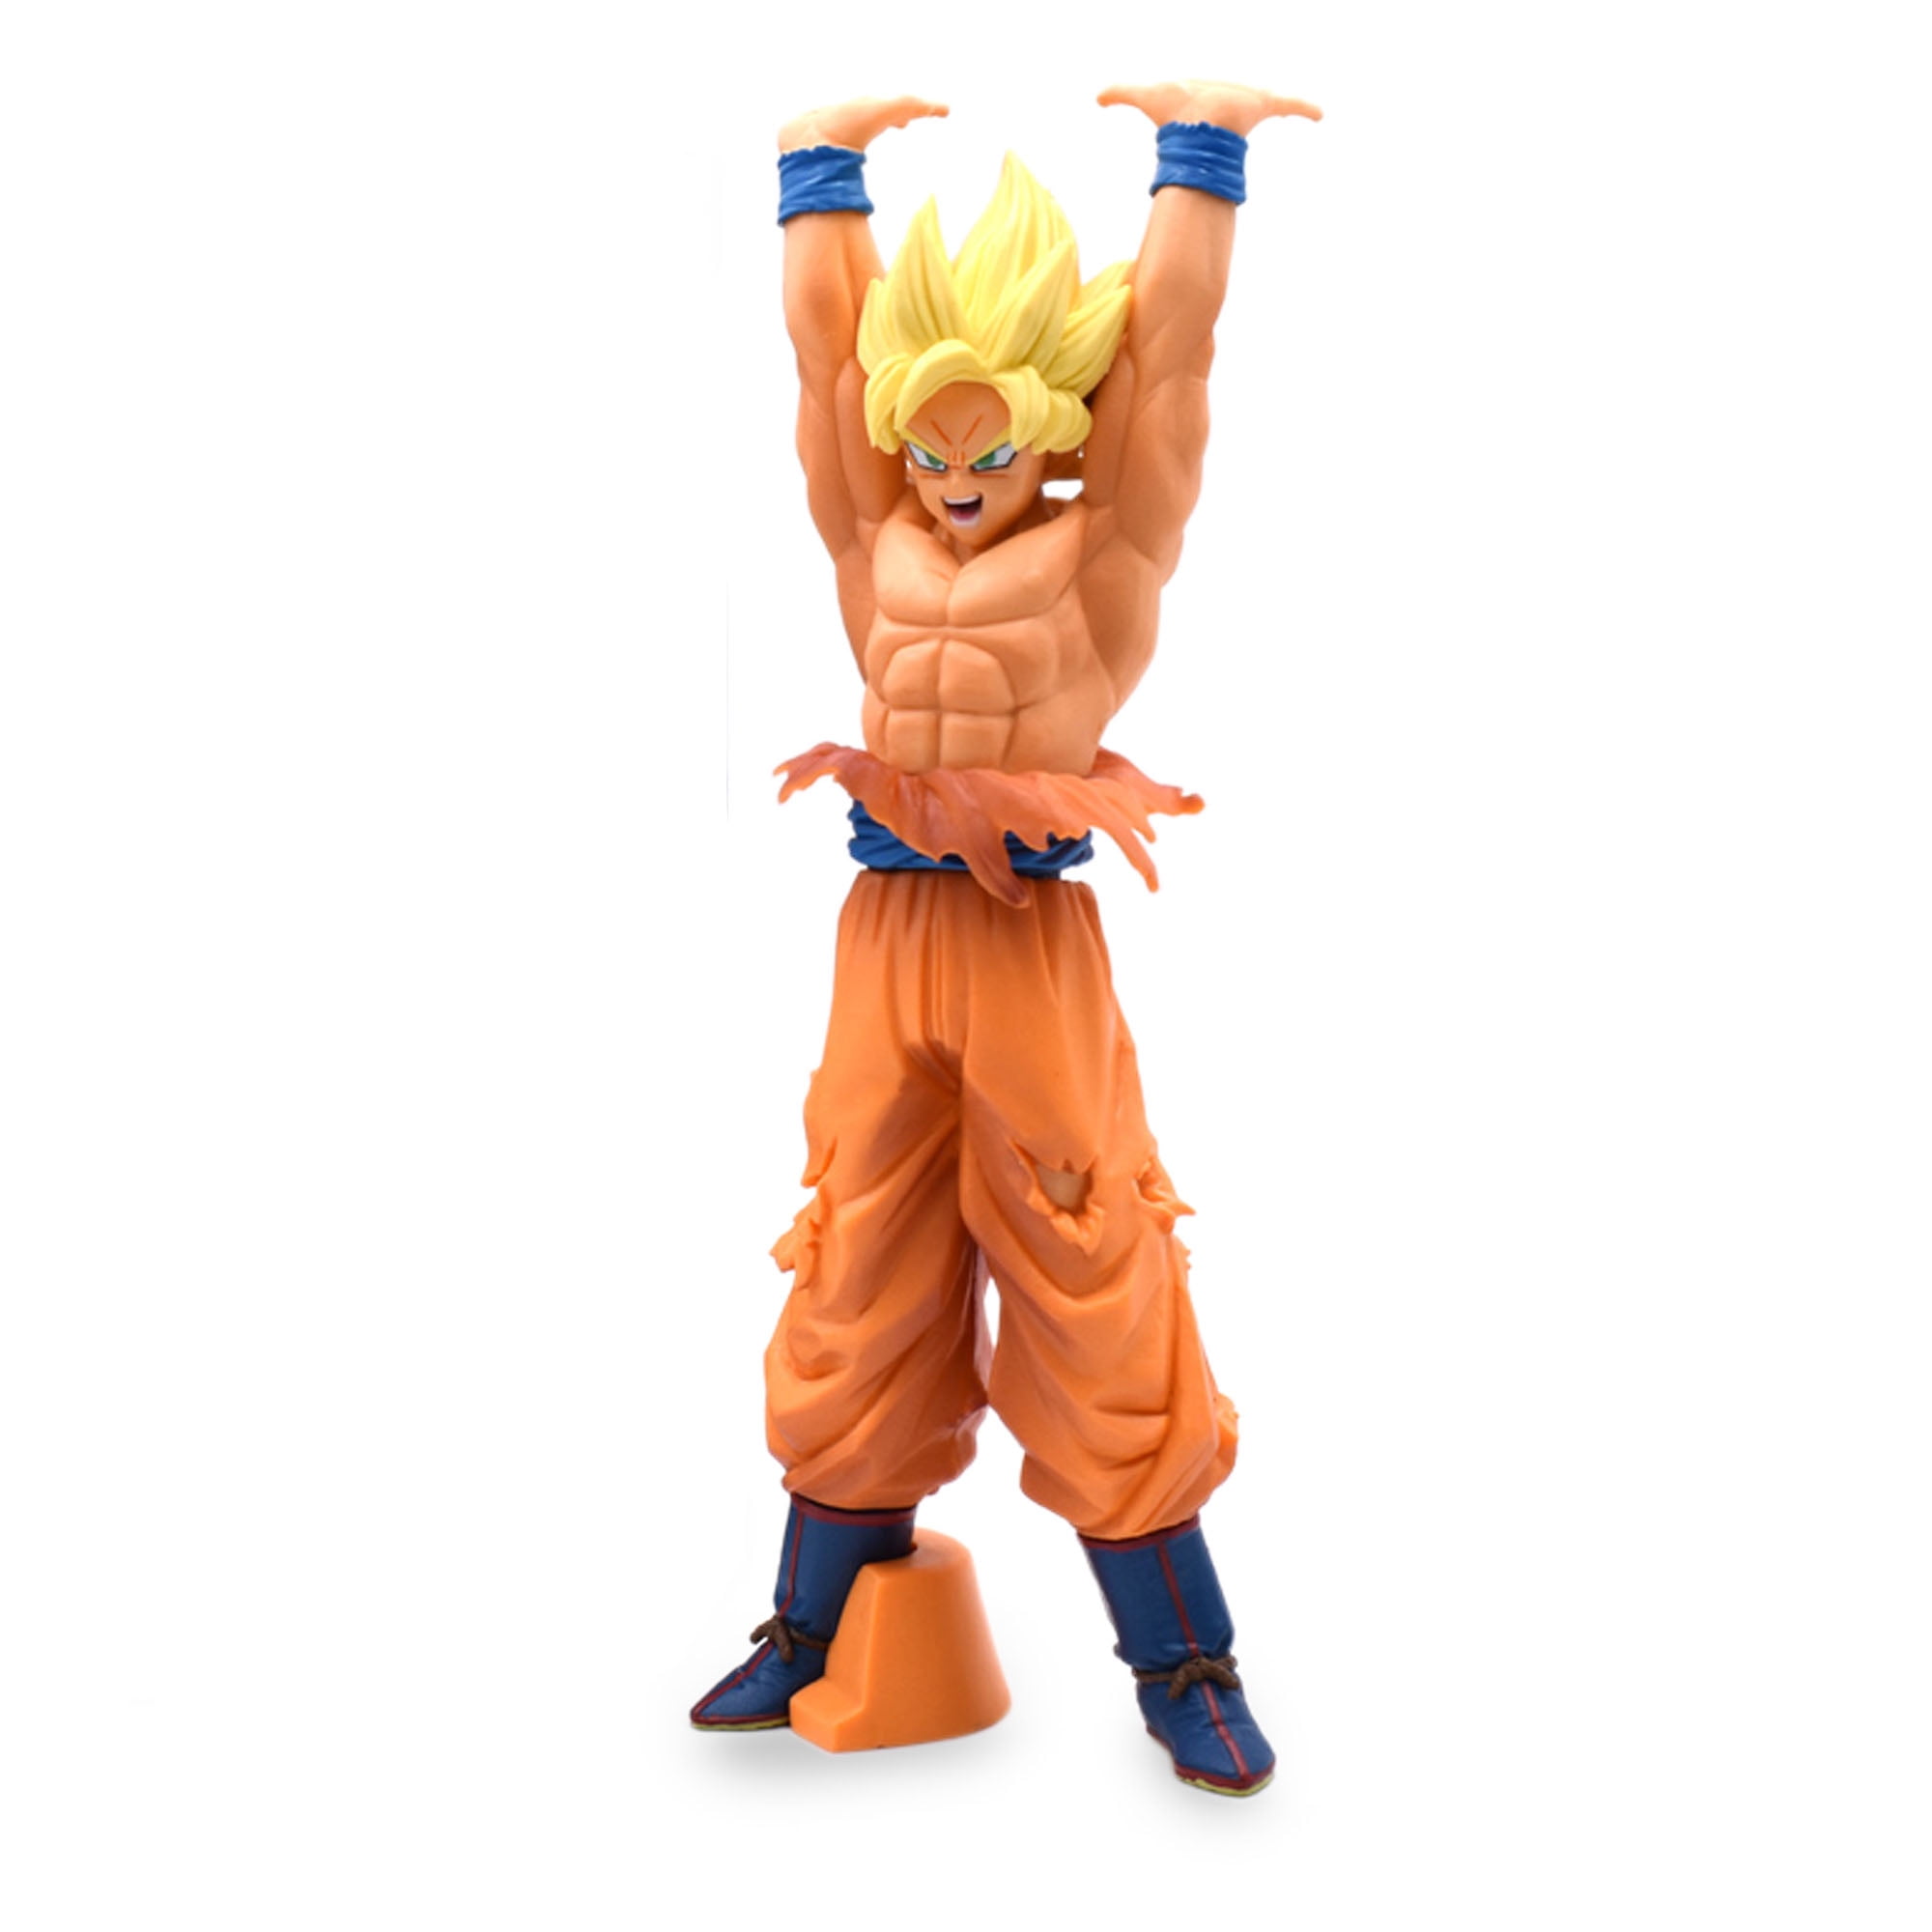 Hot Anime Dragon Ball Z super Saiyan Goku PVC Action Figure Figurine Toy Gift 